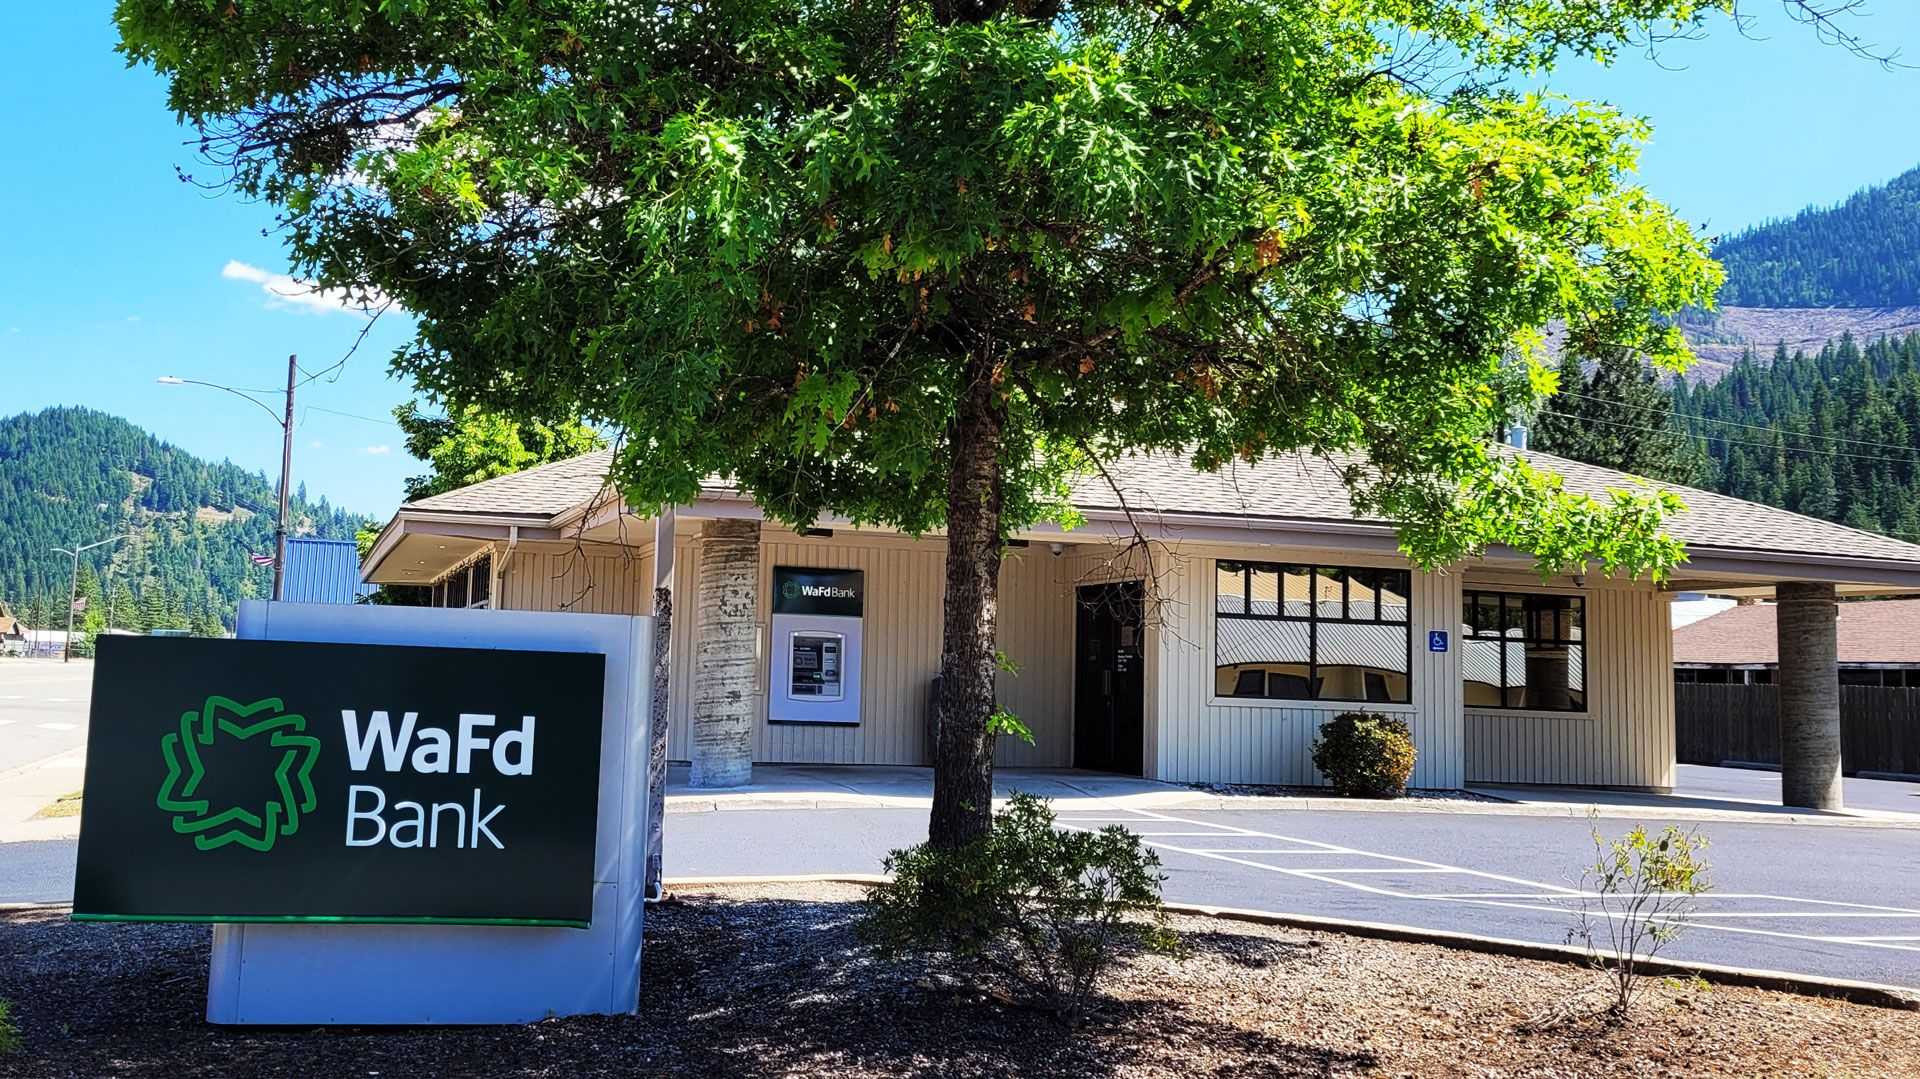 WaFd Bank in Osburn, Idaho #1323 - Washington Federal.